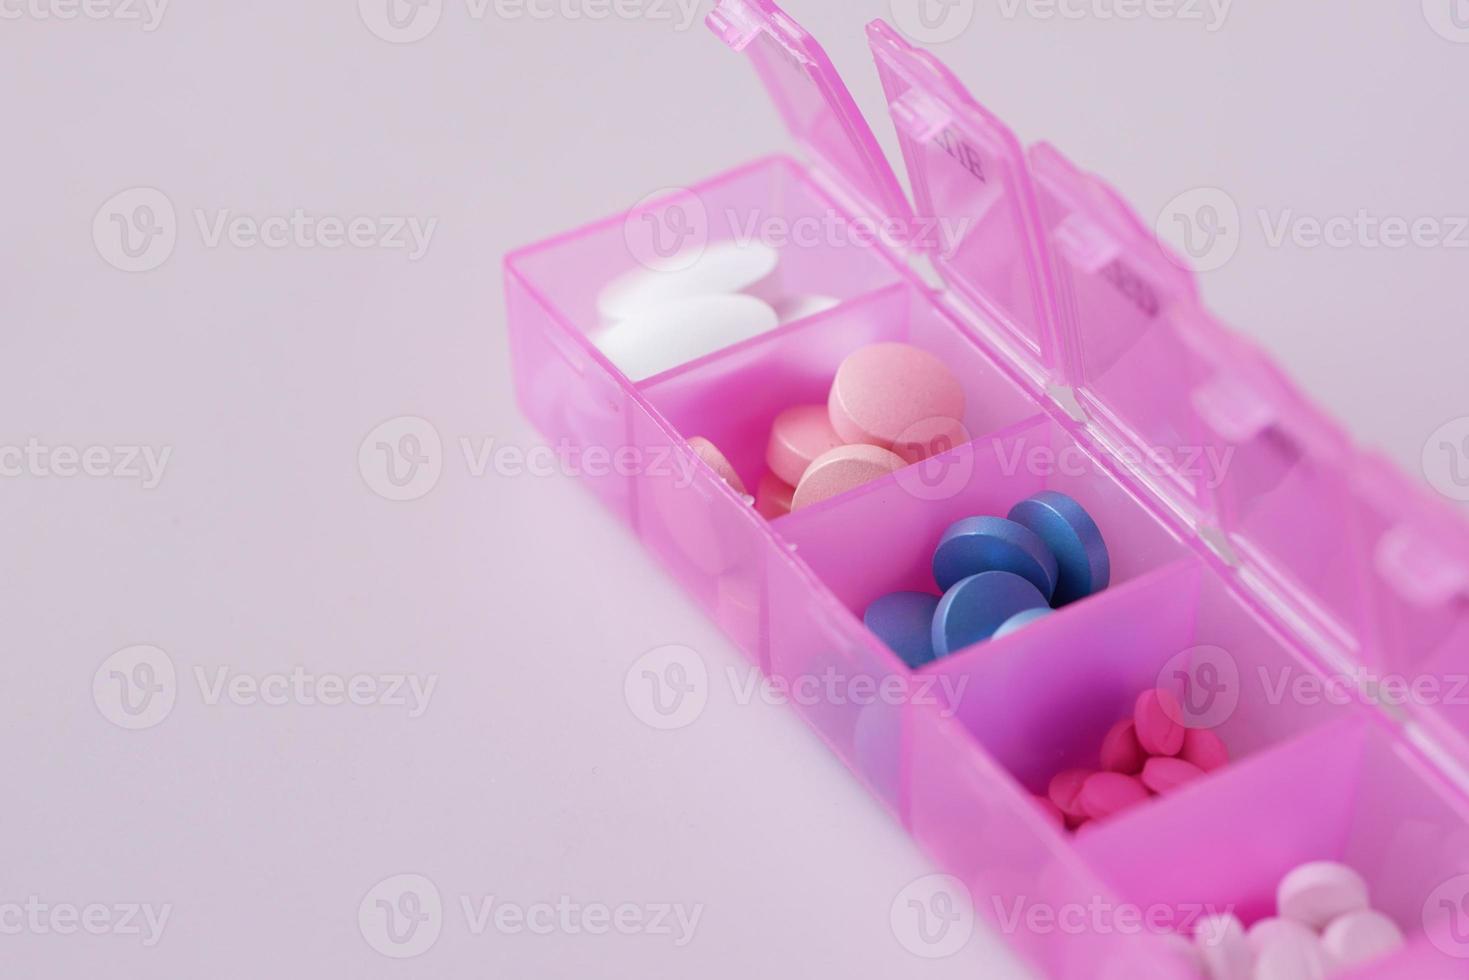 medicinska piller i en piller ask på ljuslila bakgrund foto